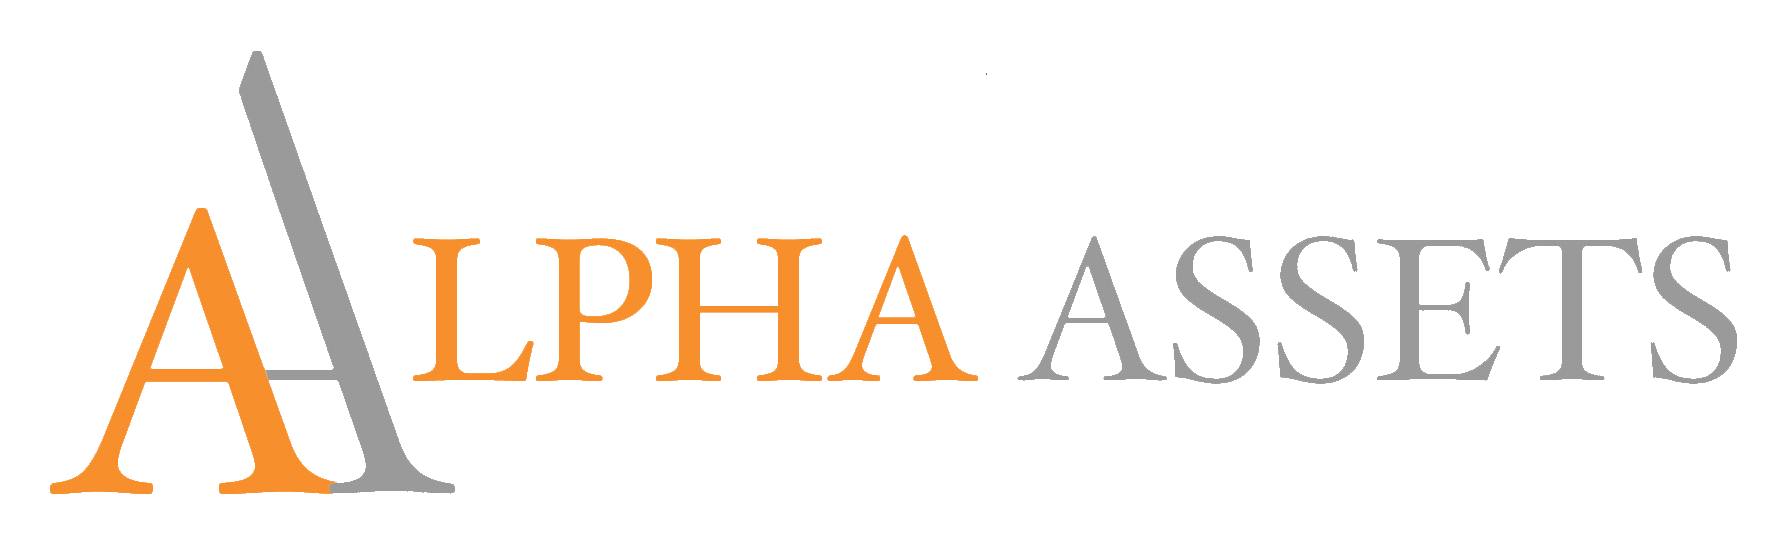 Alpha Assets